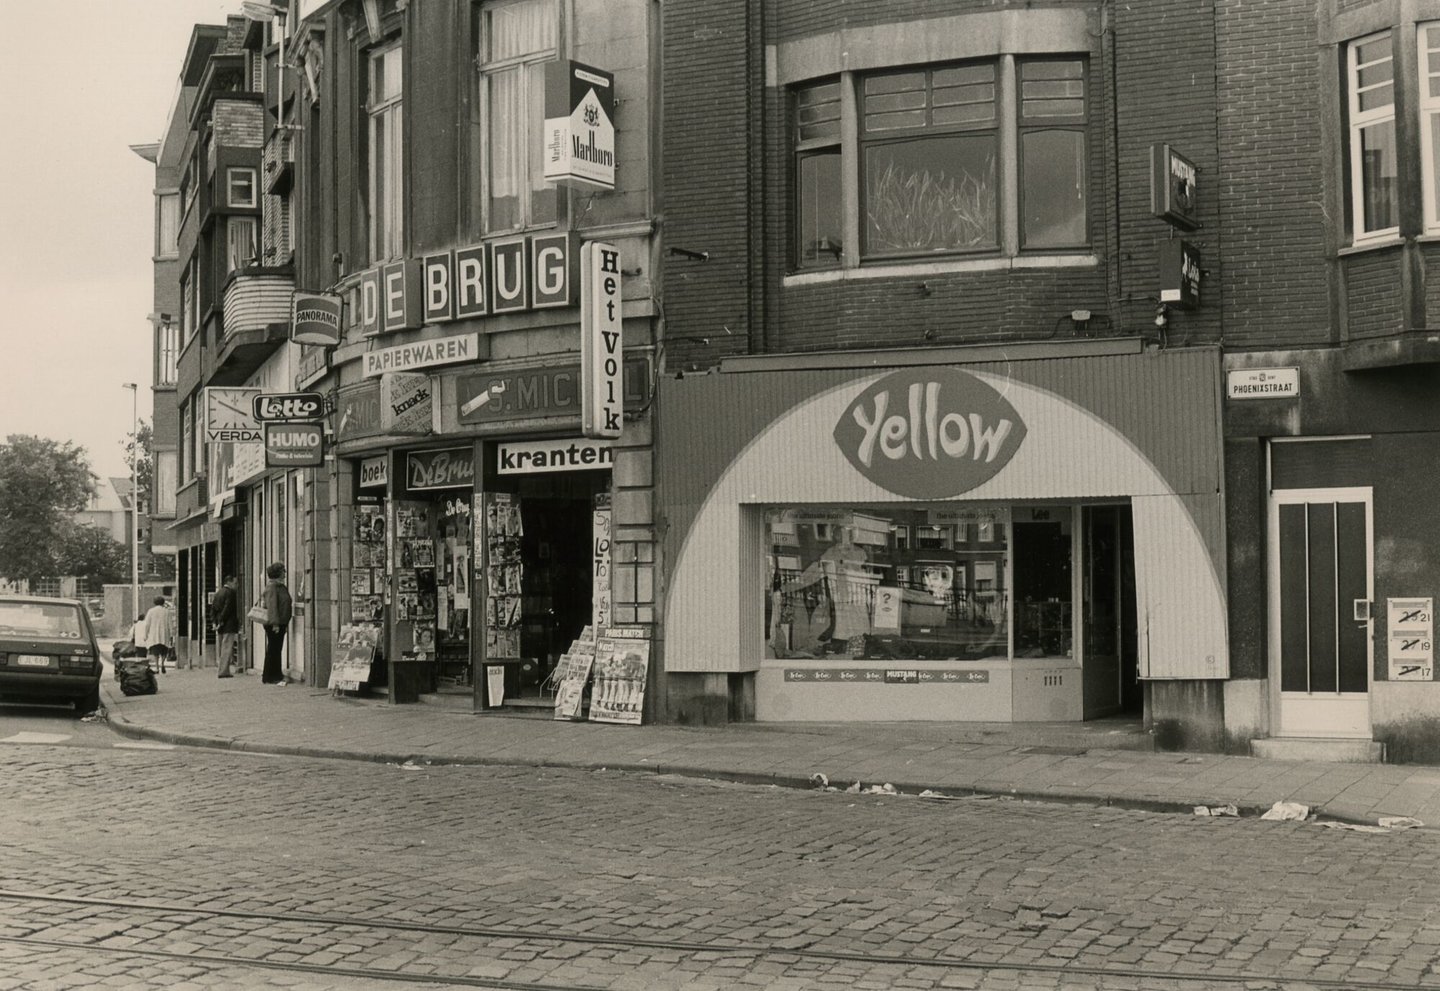 Etalage van dagbladhandel De Brug en kledingwinkel Yellow in Gent